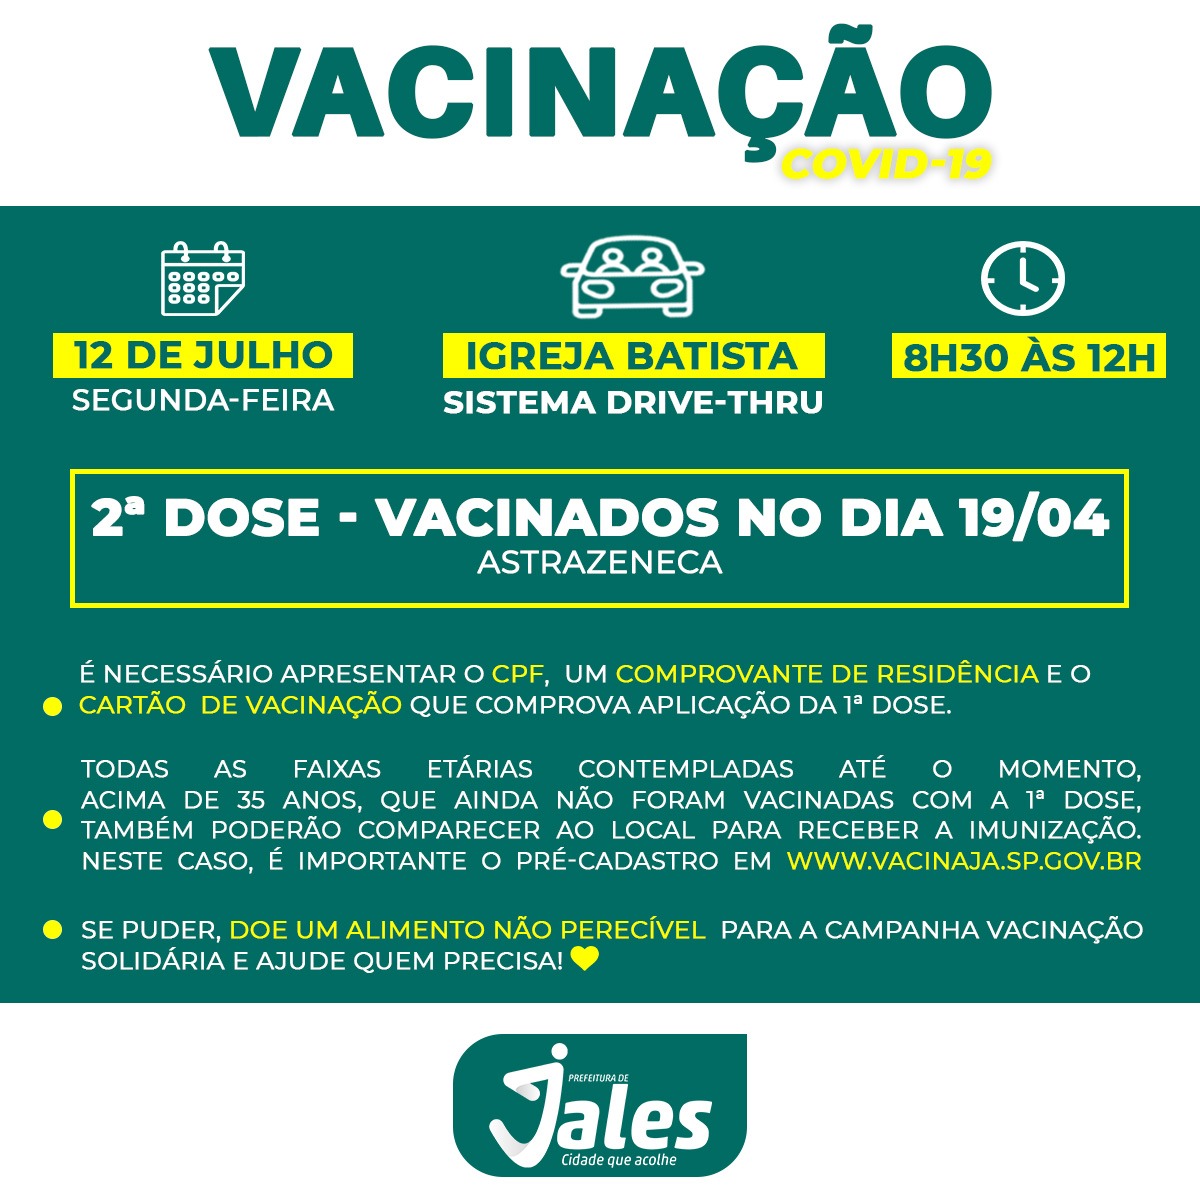 Jales - SEGUNDA DOSE: será a vez das pessoas que se vacinaram no dia 19/04, receberem o reforço vacinal com a segunda dose do imunizante AstraZeneca.